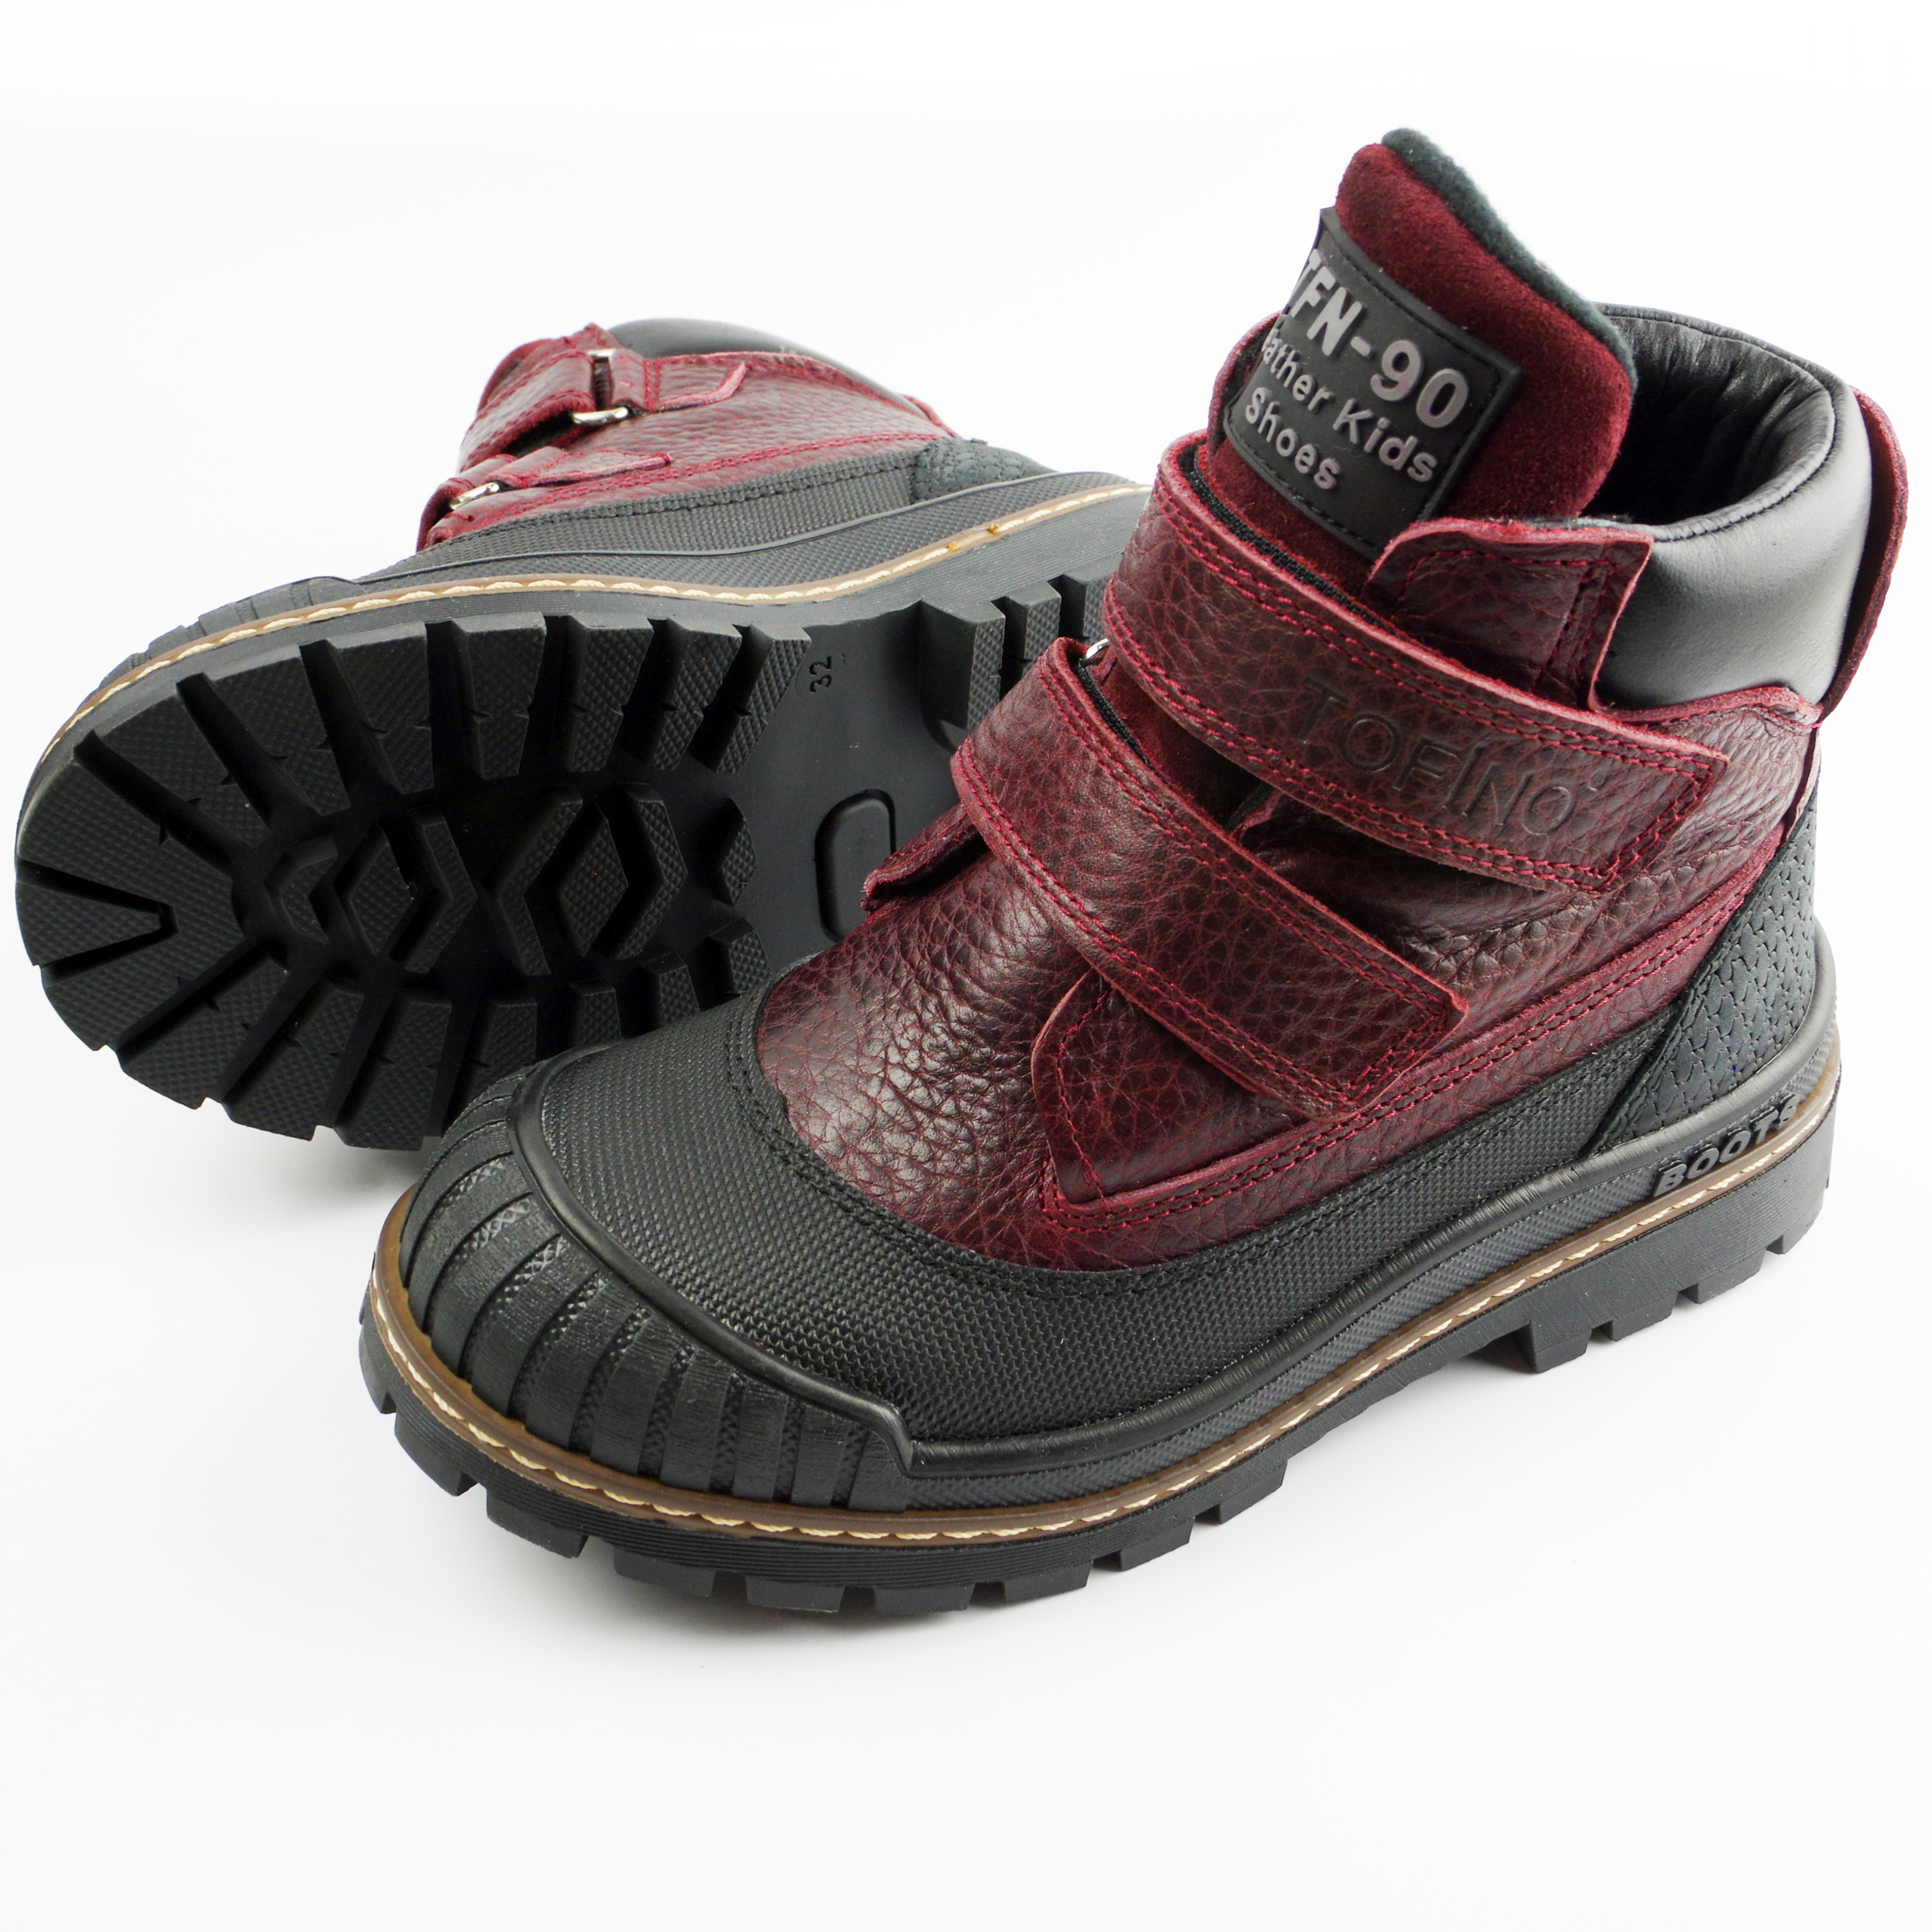 Демисезонные ботинки (2149) материал Нубук, цвет Бордовый  для девочки 31-36 размеры – Sole Kids. Фото 4